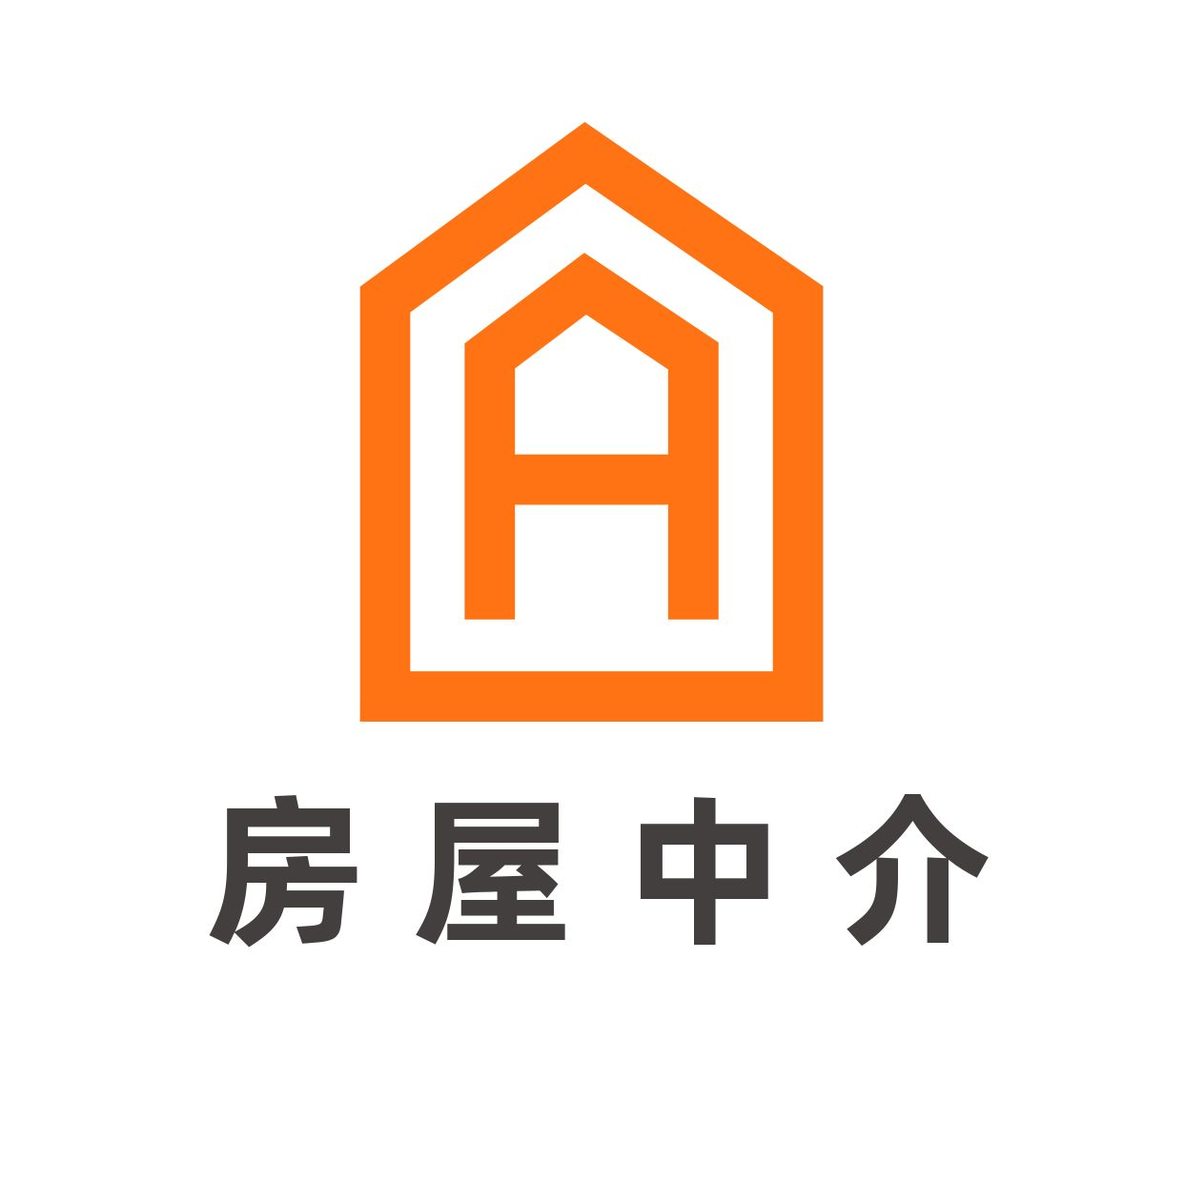 房屋房产中介logo 10